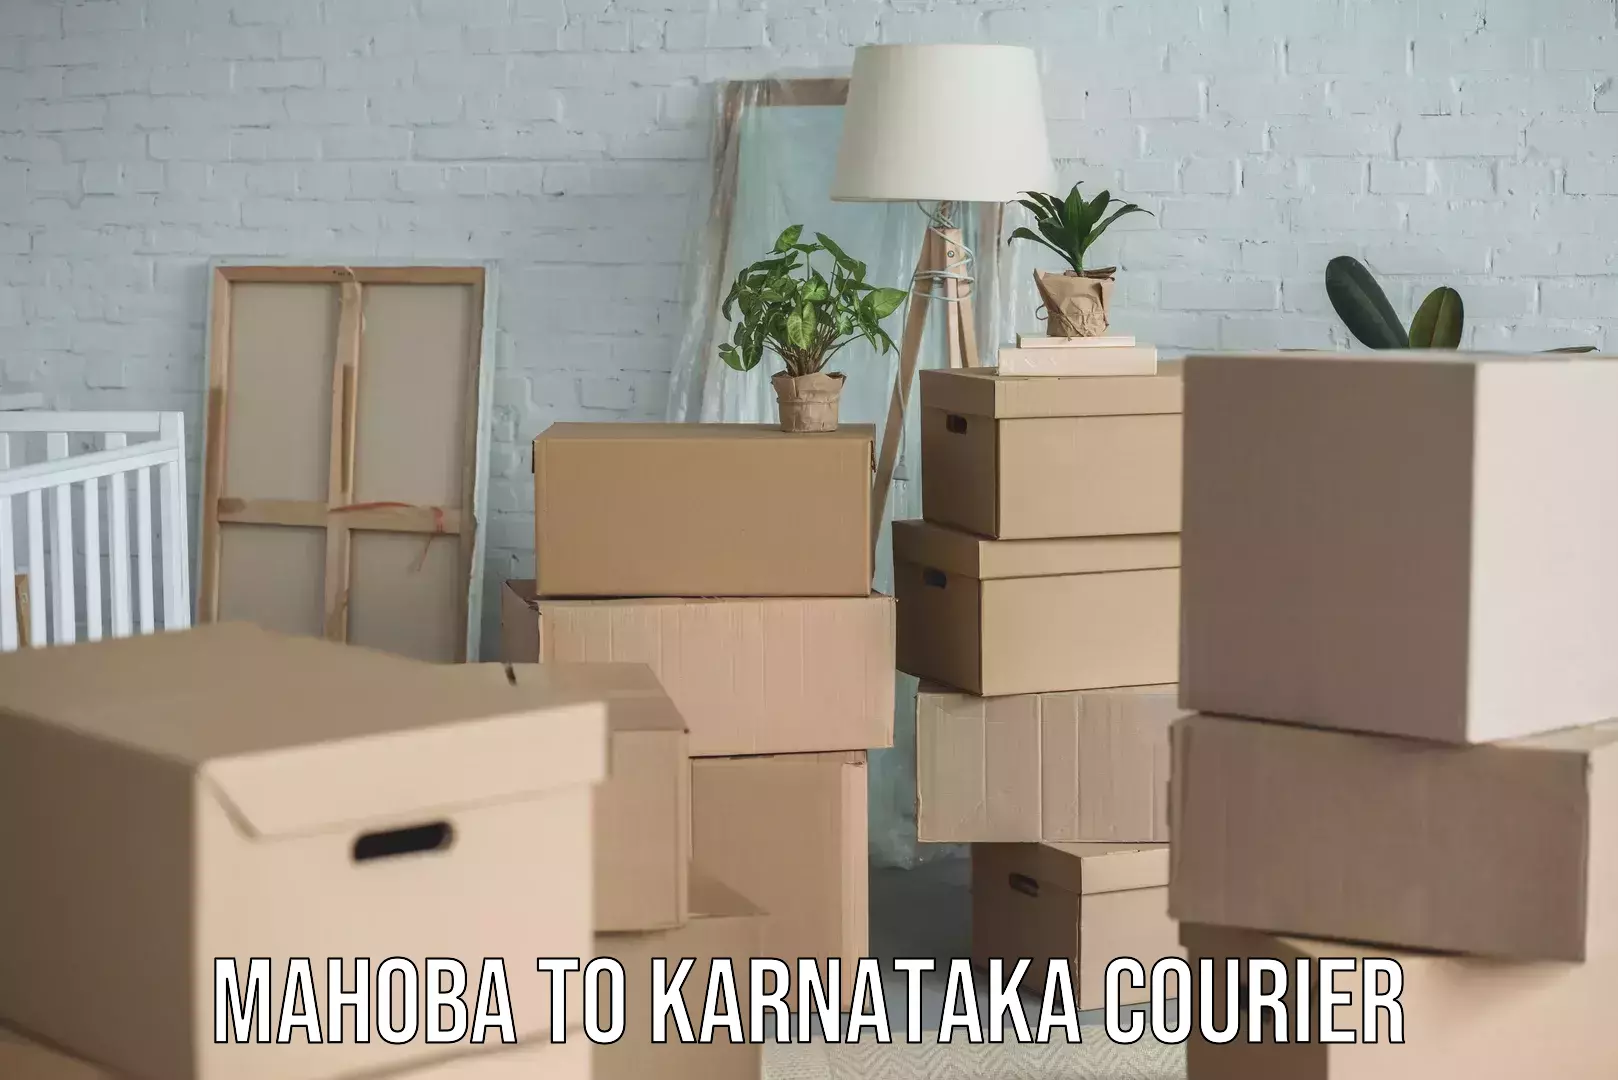 Quality moving company Mahoba to Karnataka